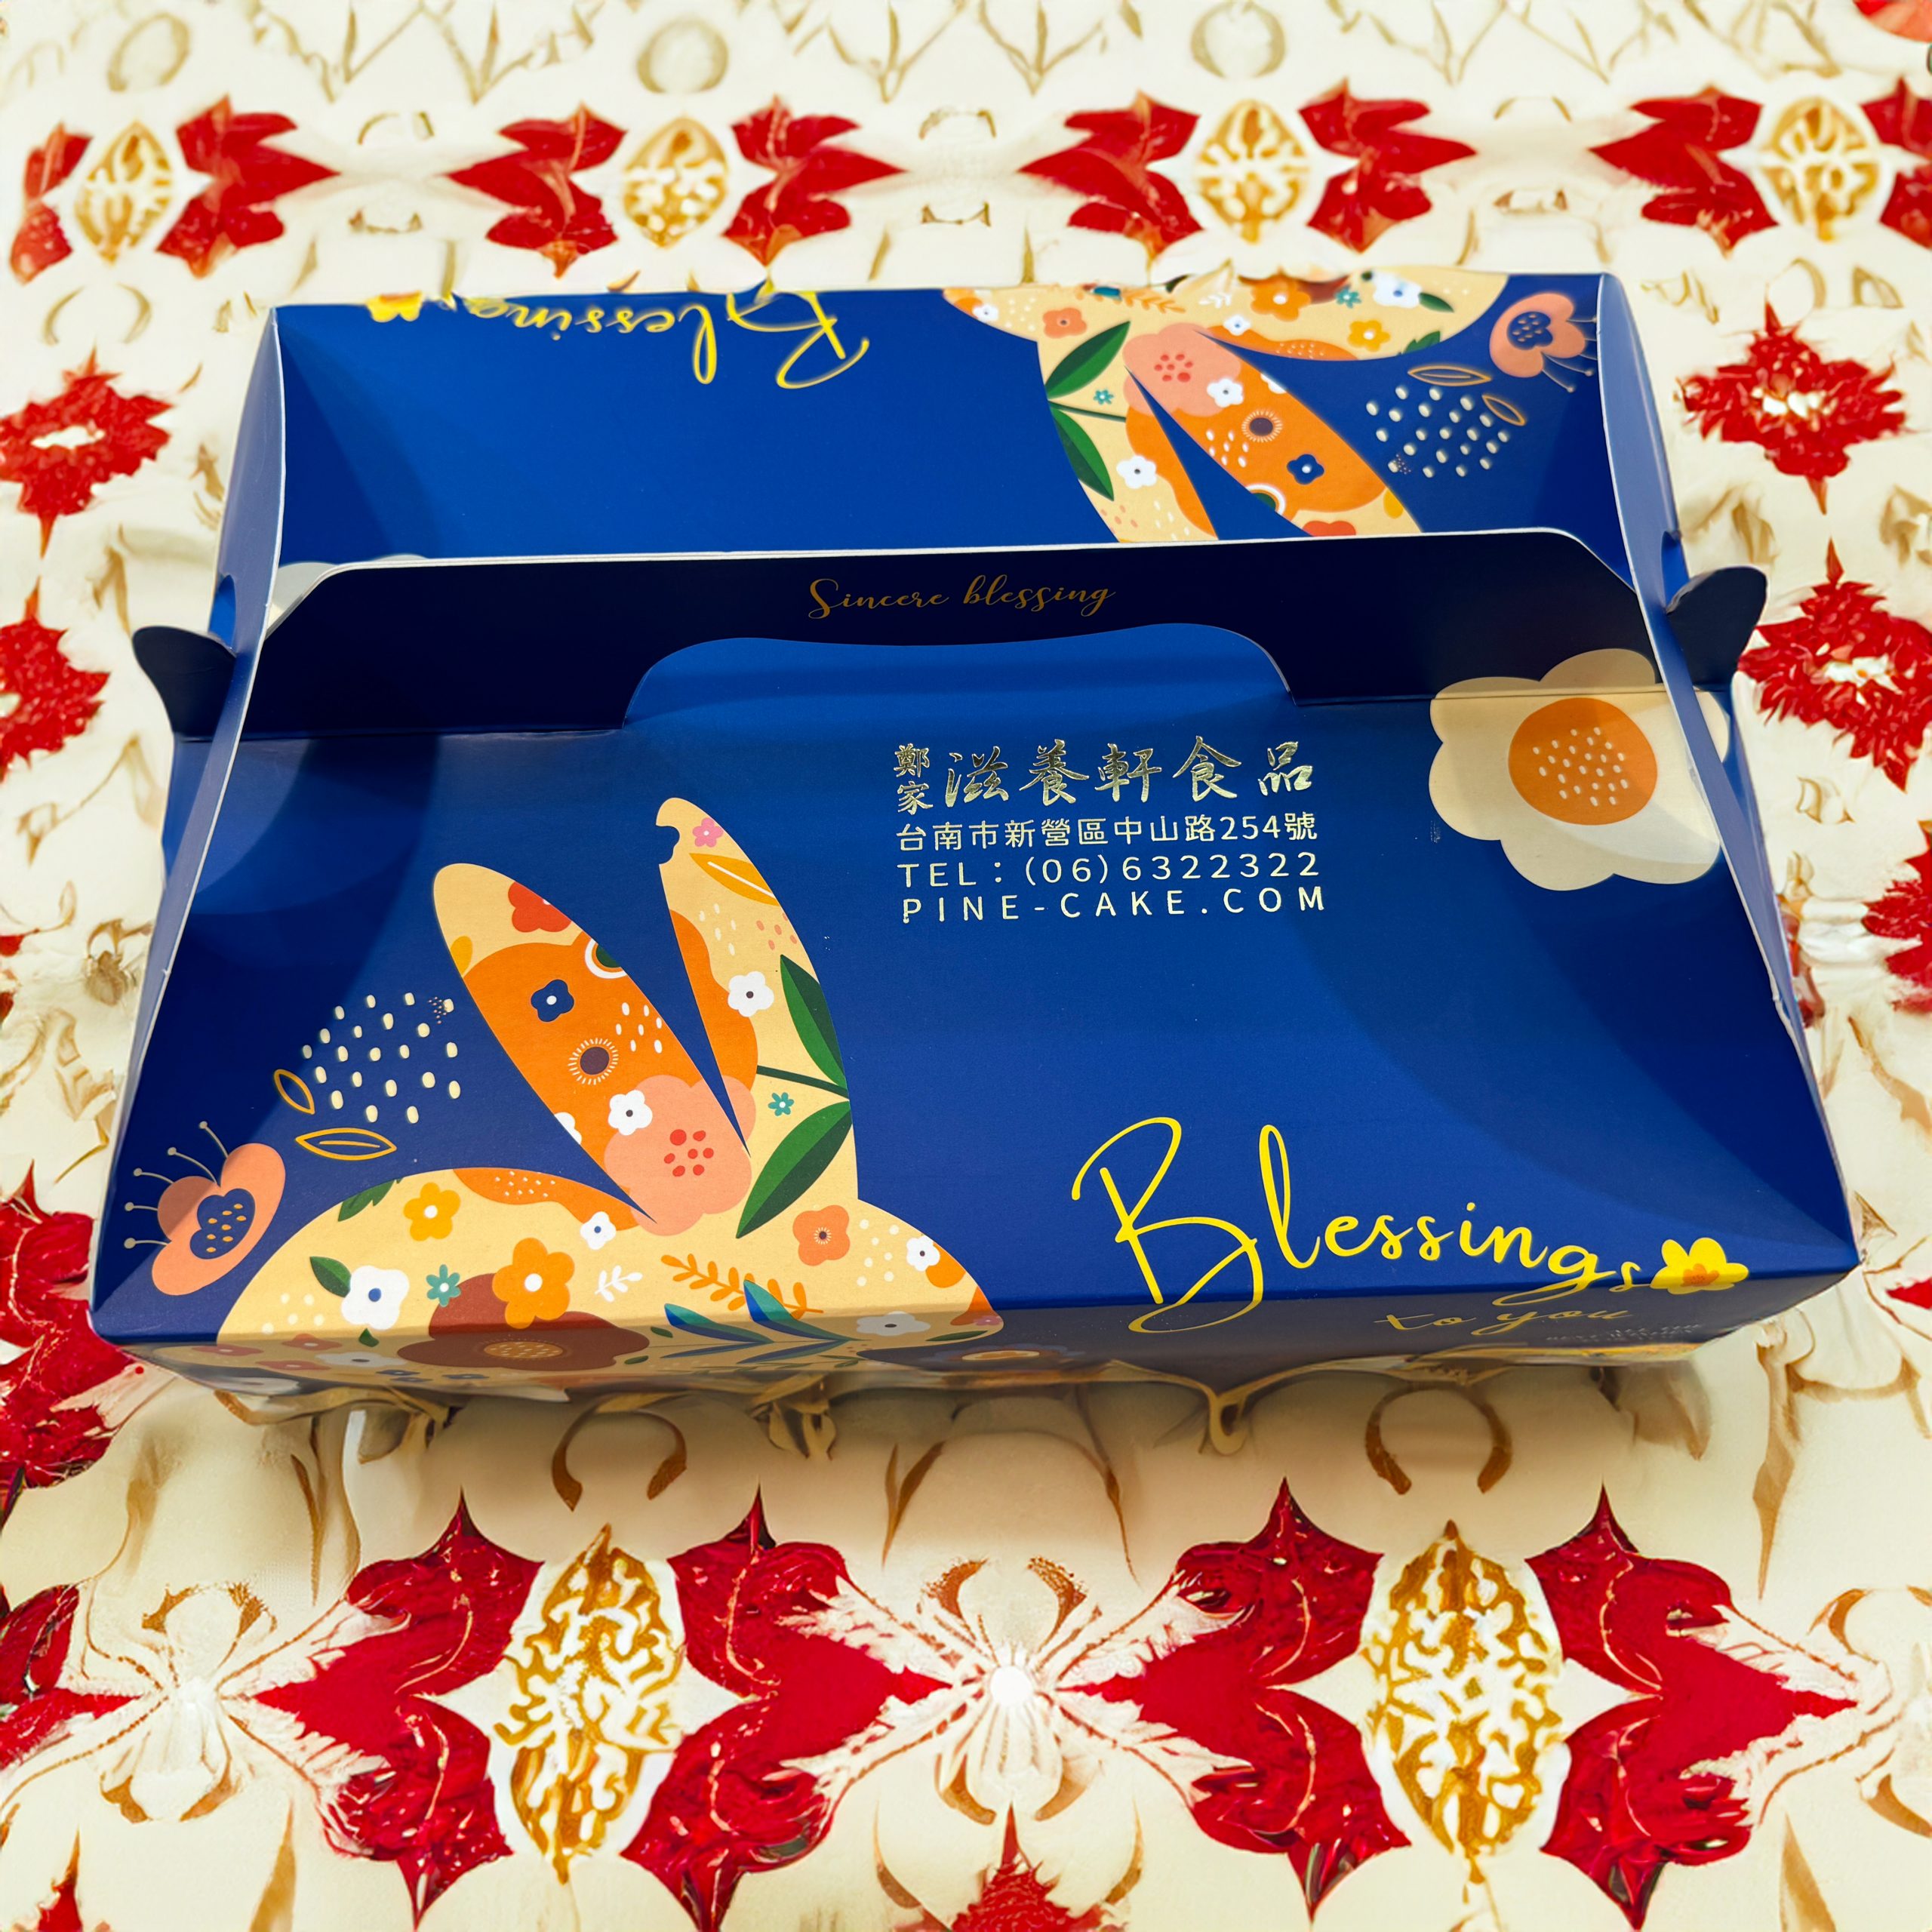 鳳黃酥（鳳凰酥）手提禮盒 – 經典鳳梨酥包裹鹹鹹鴨蛋黃（8入/10入）： / 滋養軒店取 / 常溫宅配